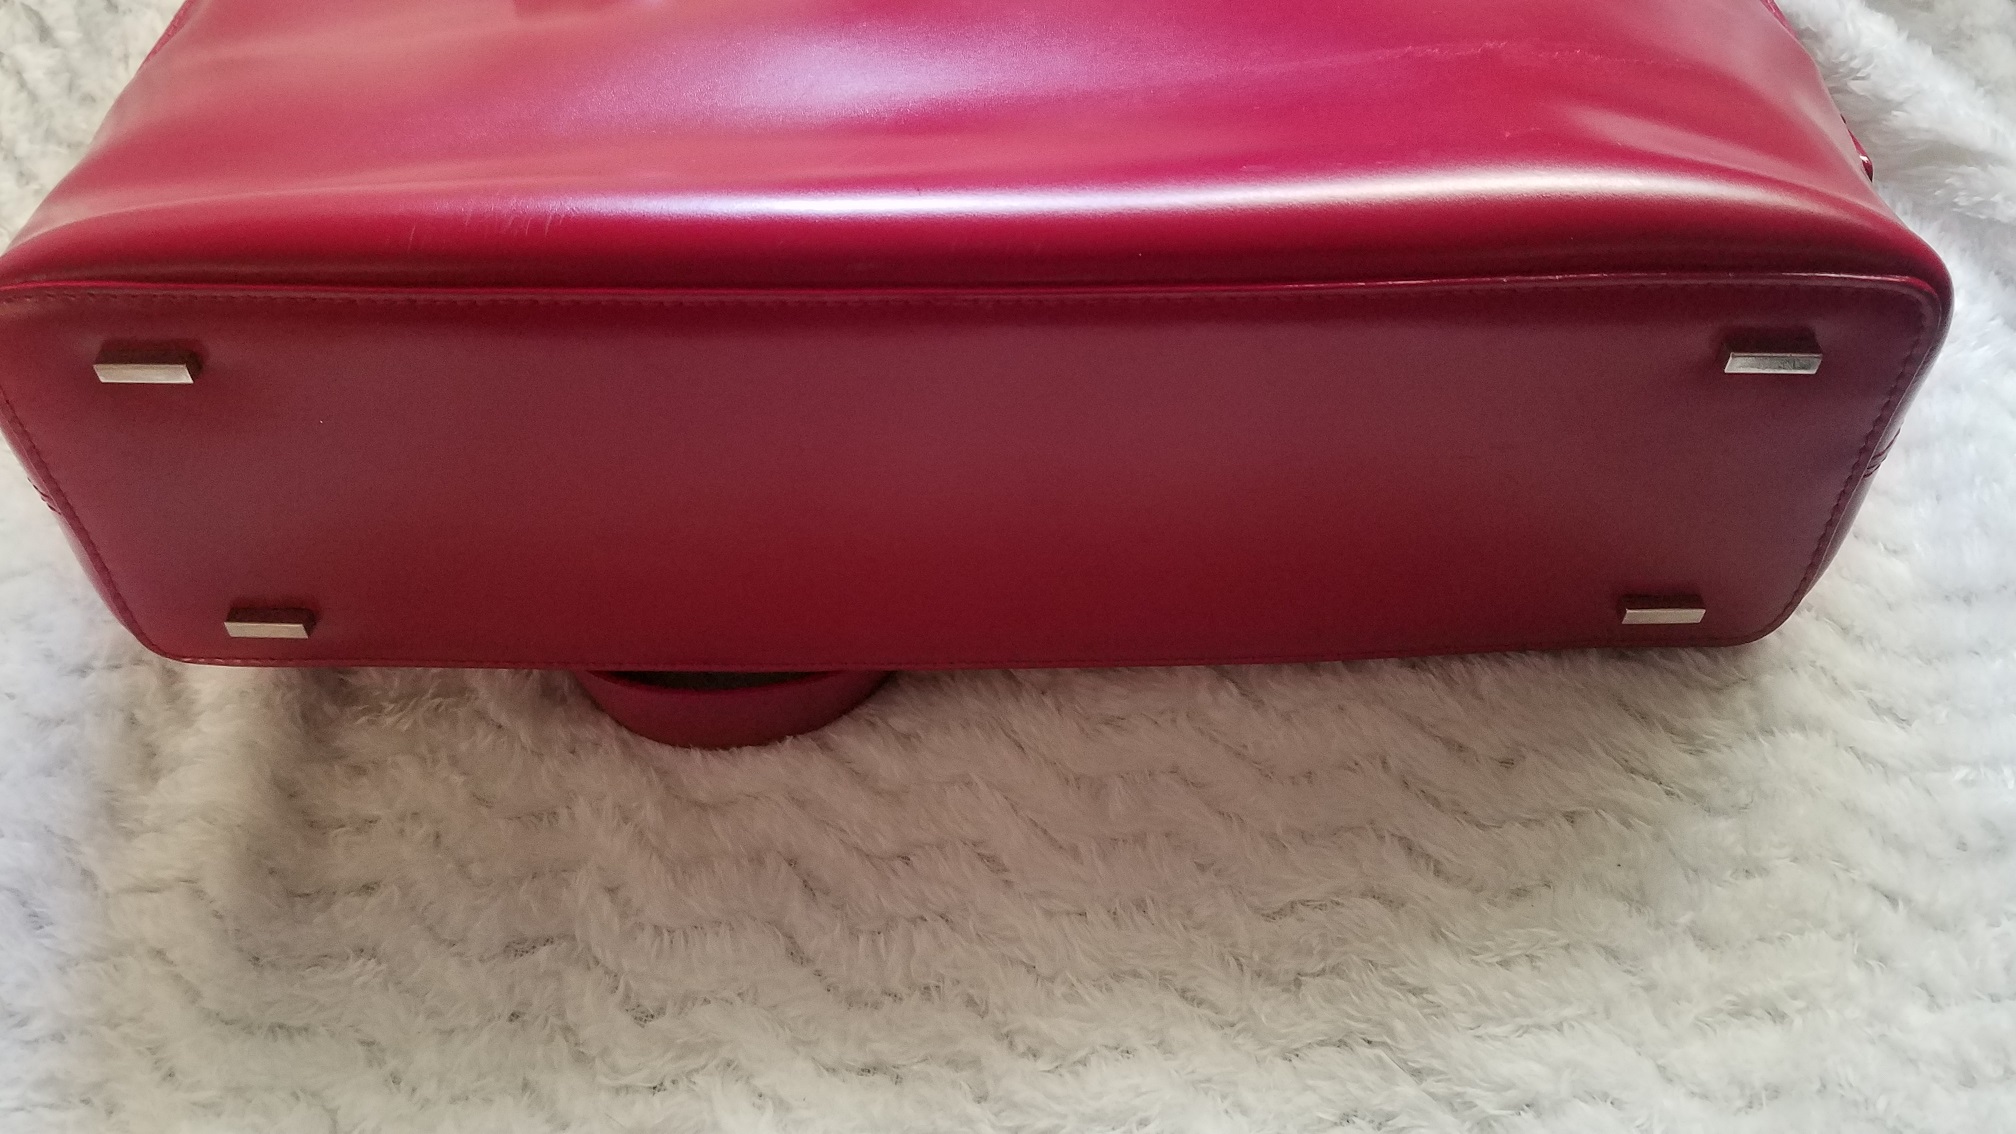 DISSONA Red Leather Bag Satchel Shoulder Bag